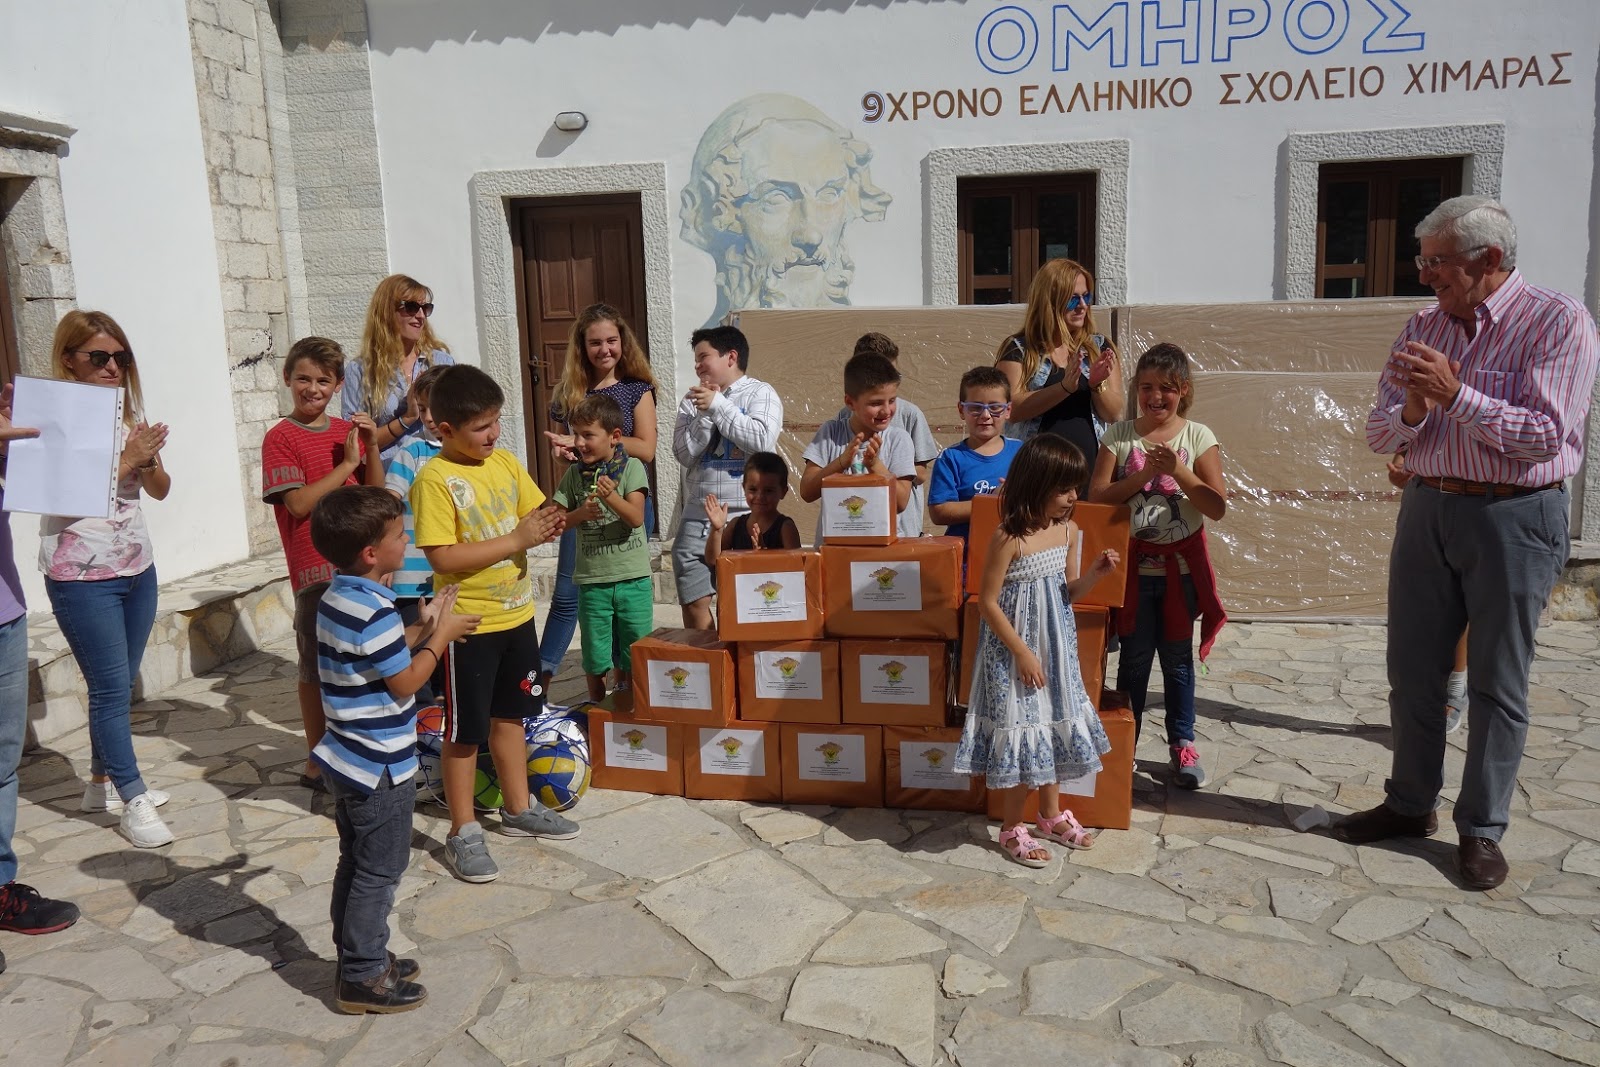 ΕΑΑΣ Ξάνθης: Μεγάλη Ανταπόκριση στην έκκληση για βοήθεια Eλληνικών Σχολείων Χιμάρας και Αργυροκάστρου (ΦΩΤΟ-ΕΥΧΑΡΙΣΤΗΡΙΑ) - Φωτογραφία 13